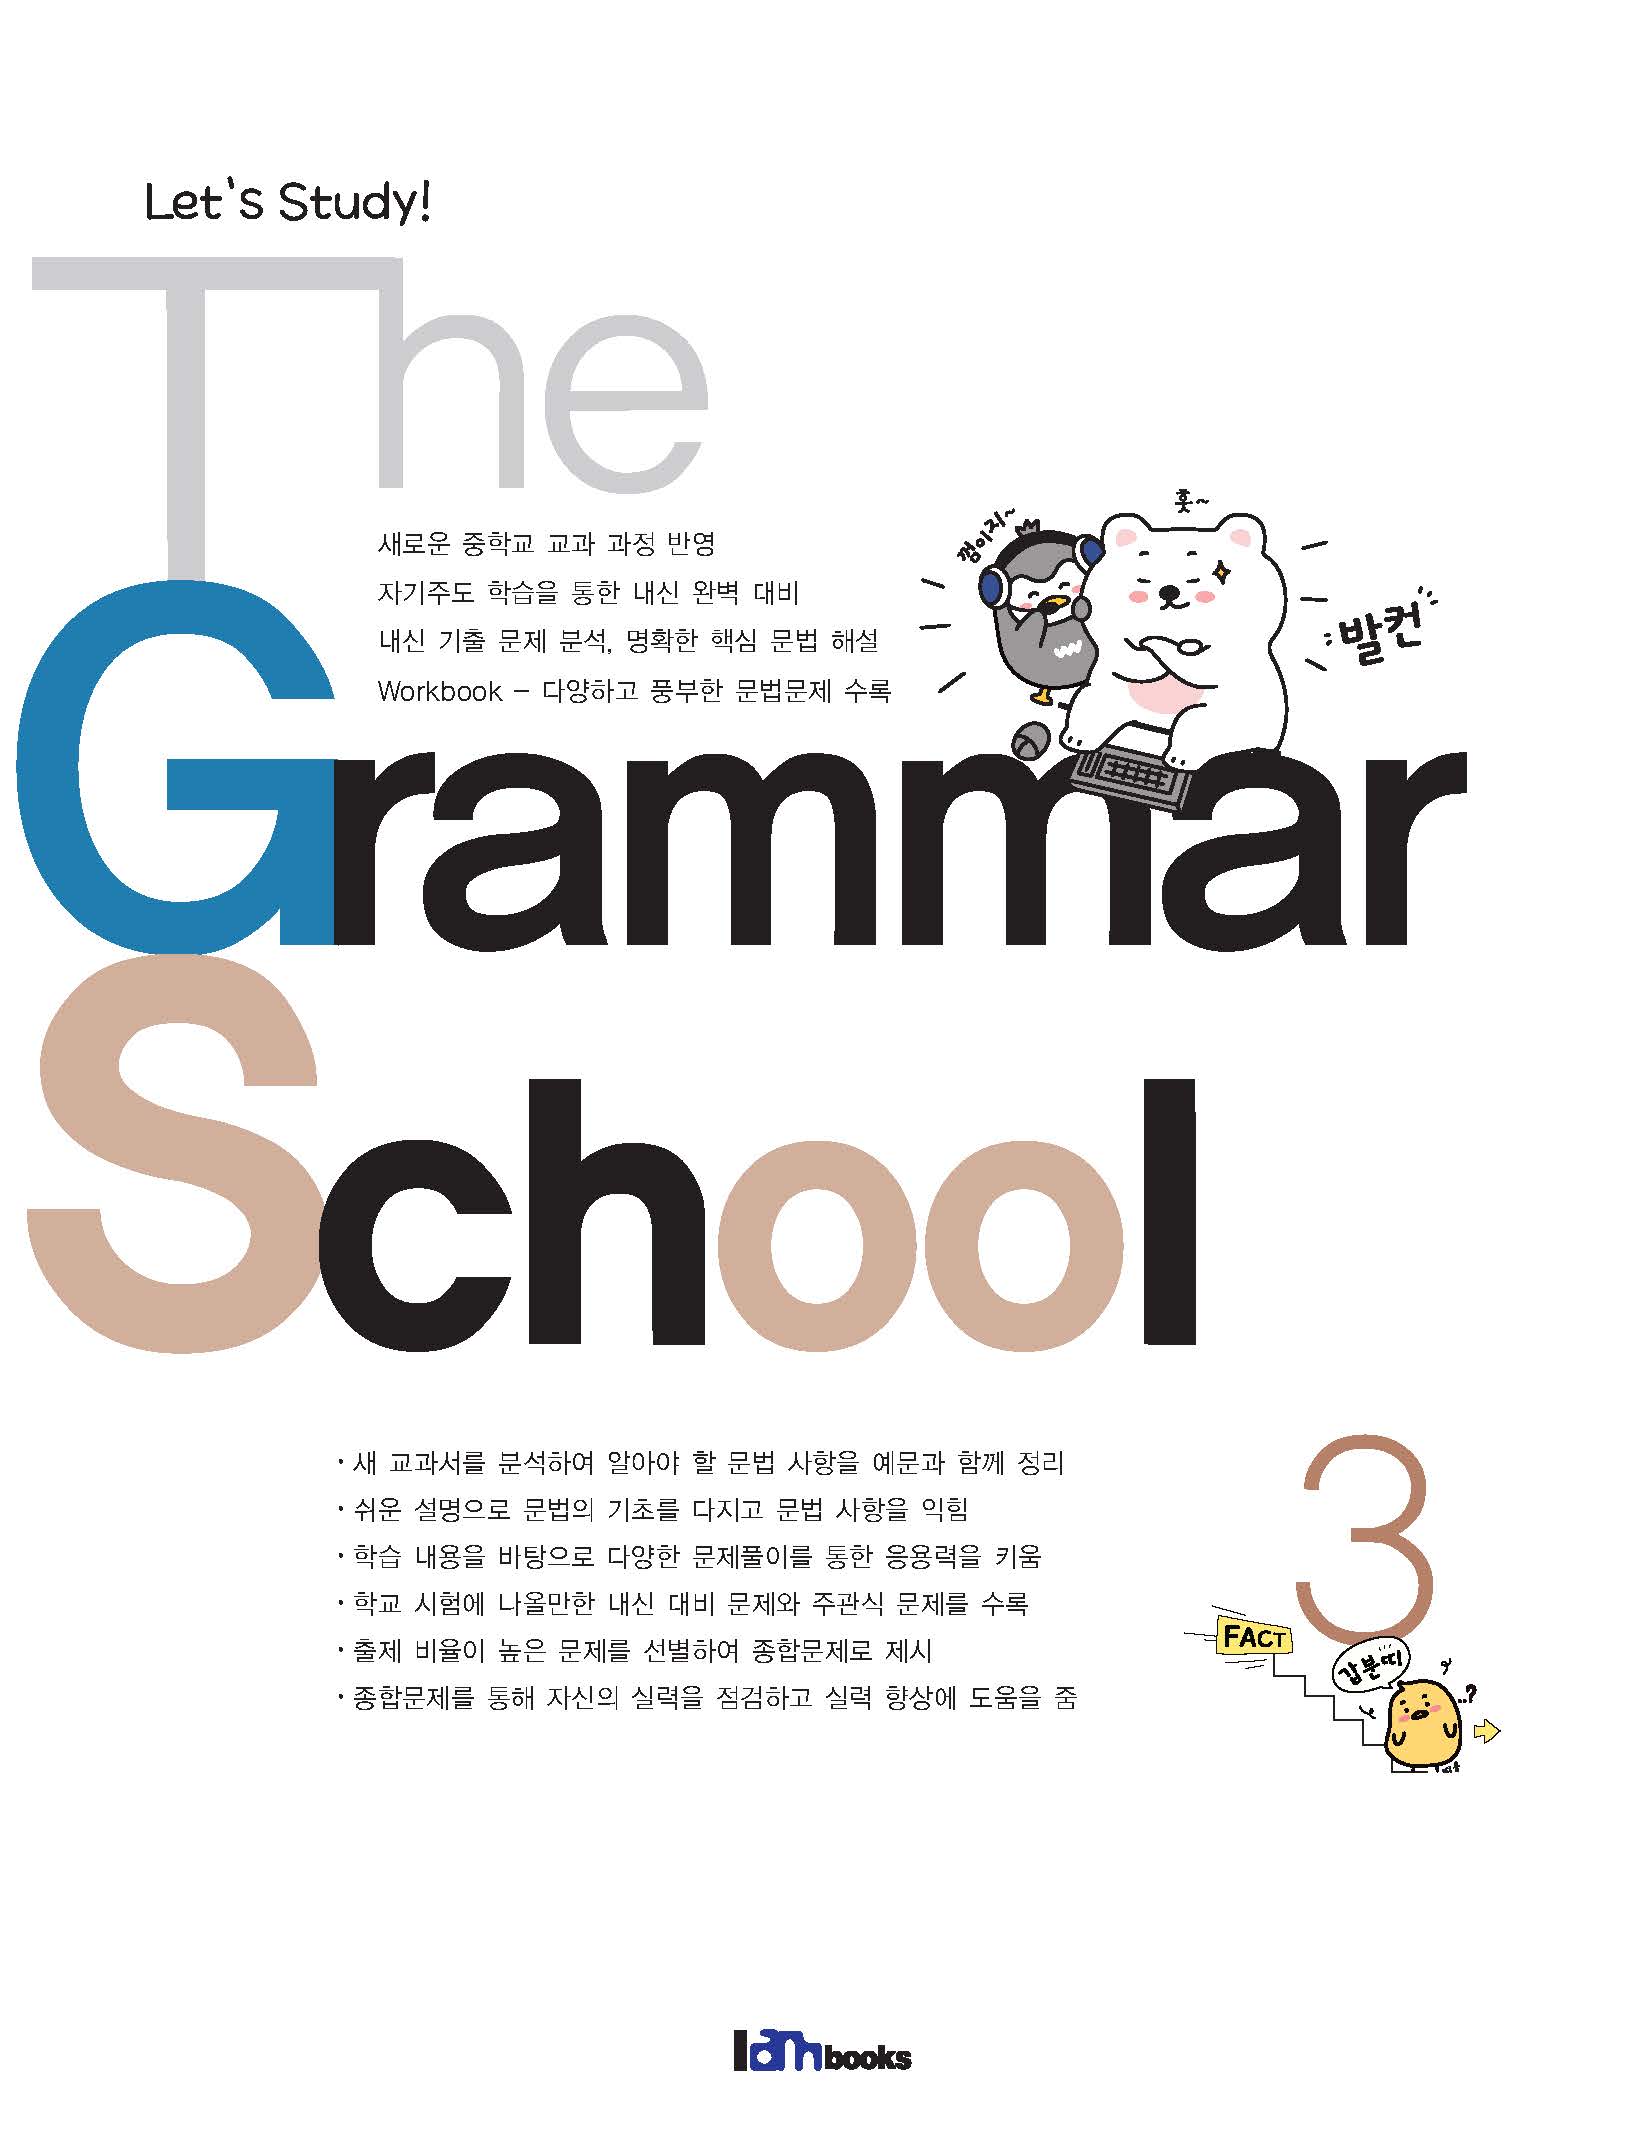 The Grammar School 3